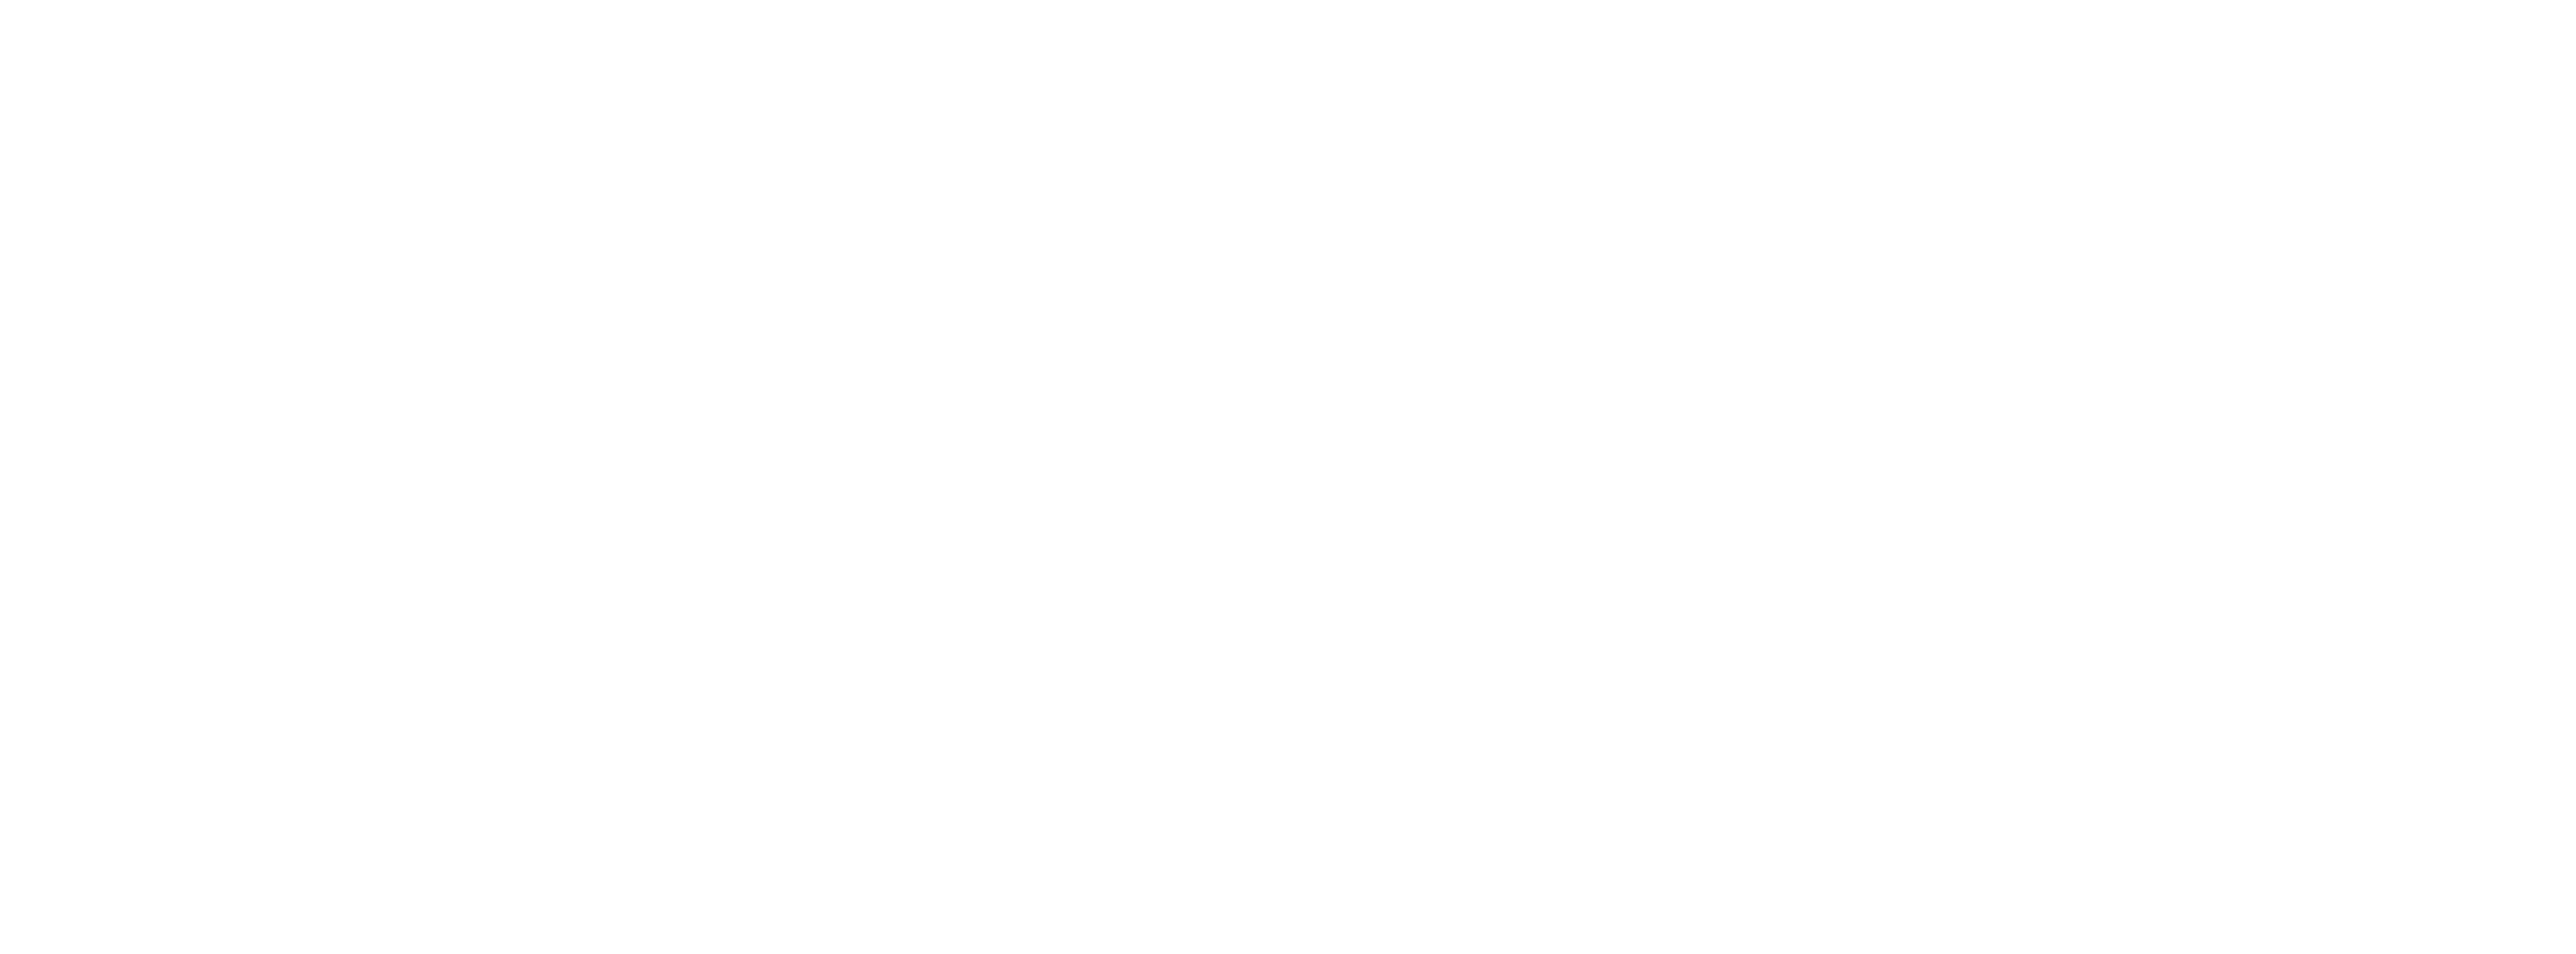 ACSI | eCampus